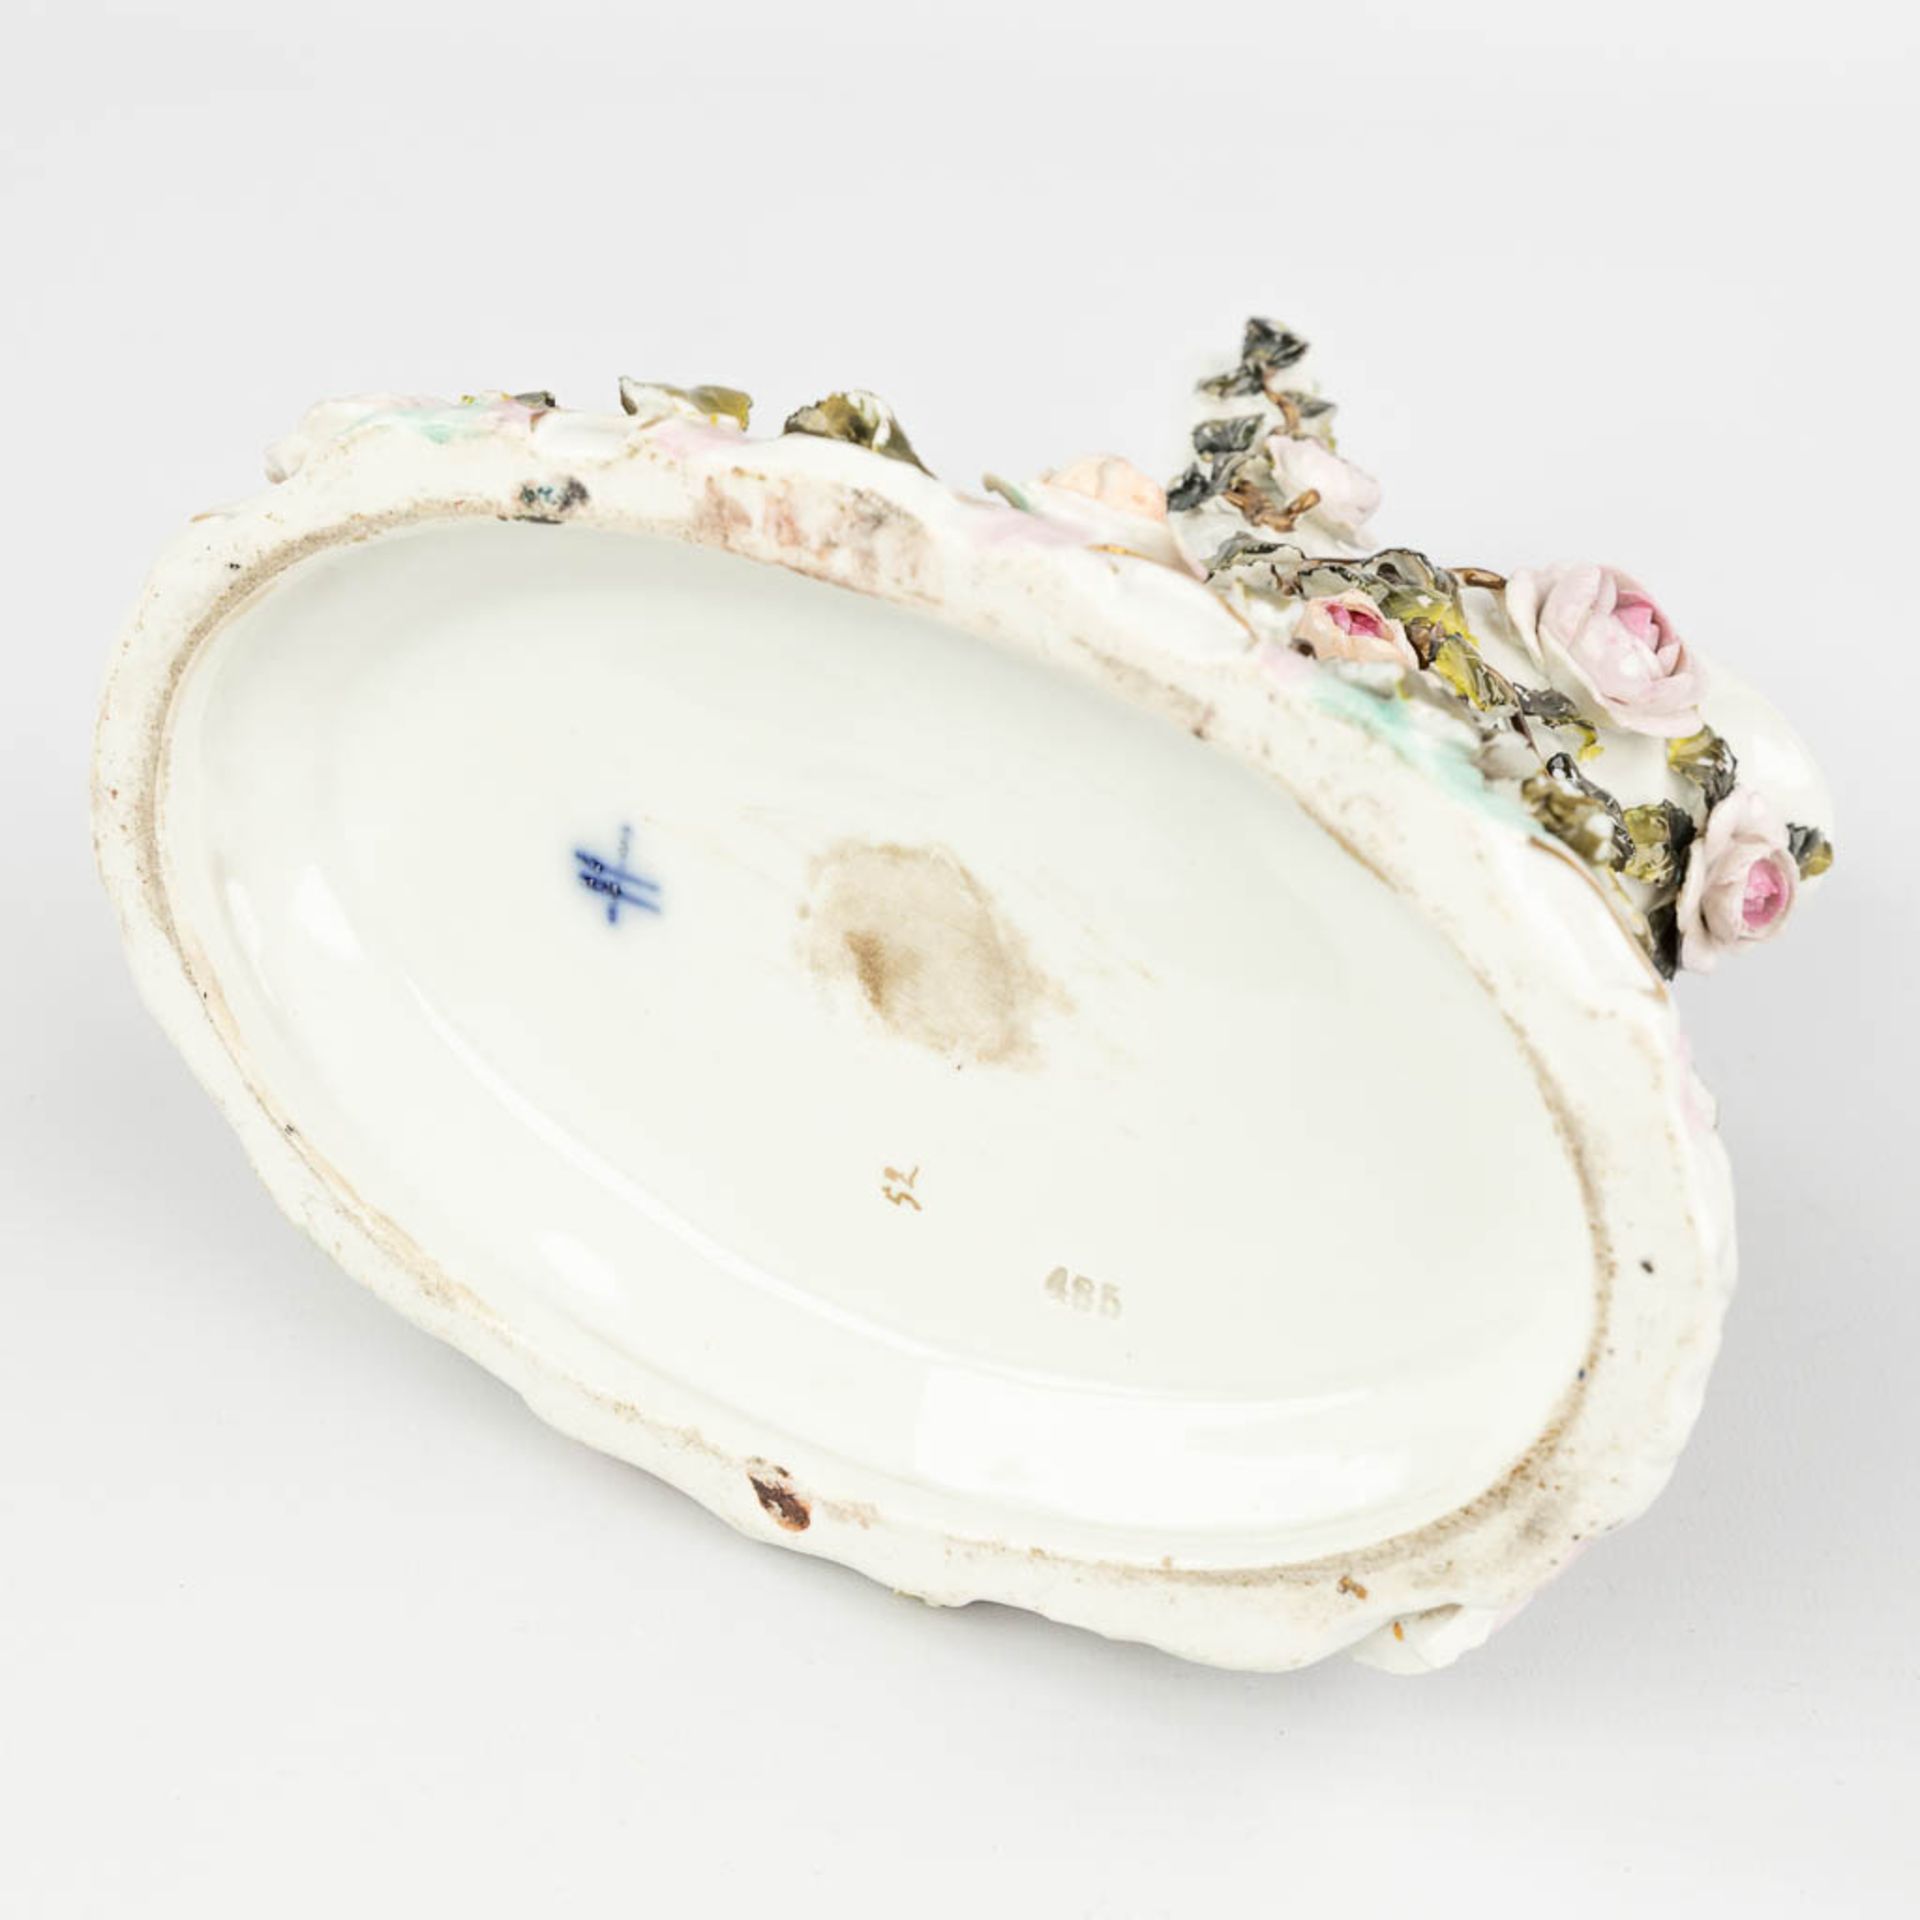 Sitzendorf & 'Royal Vienna' a set of 2 porcelain items. (L:12 x W:20 x H:23 cm) - Image 3 of 22